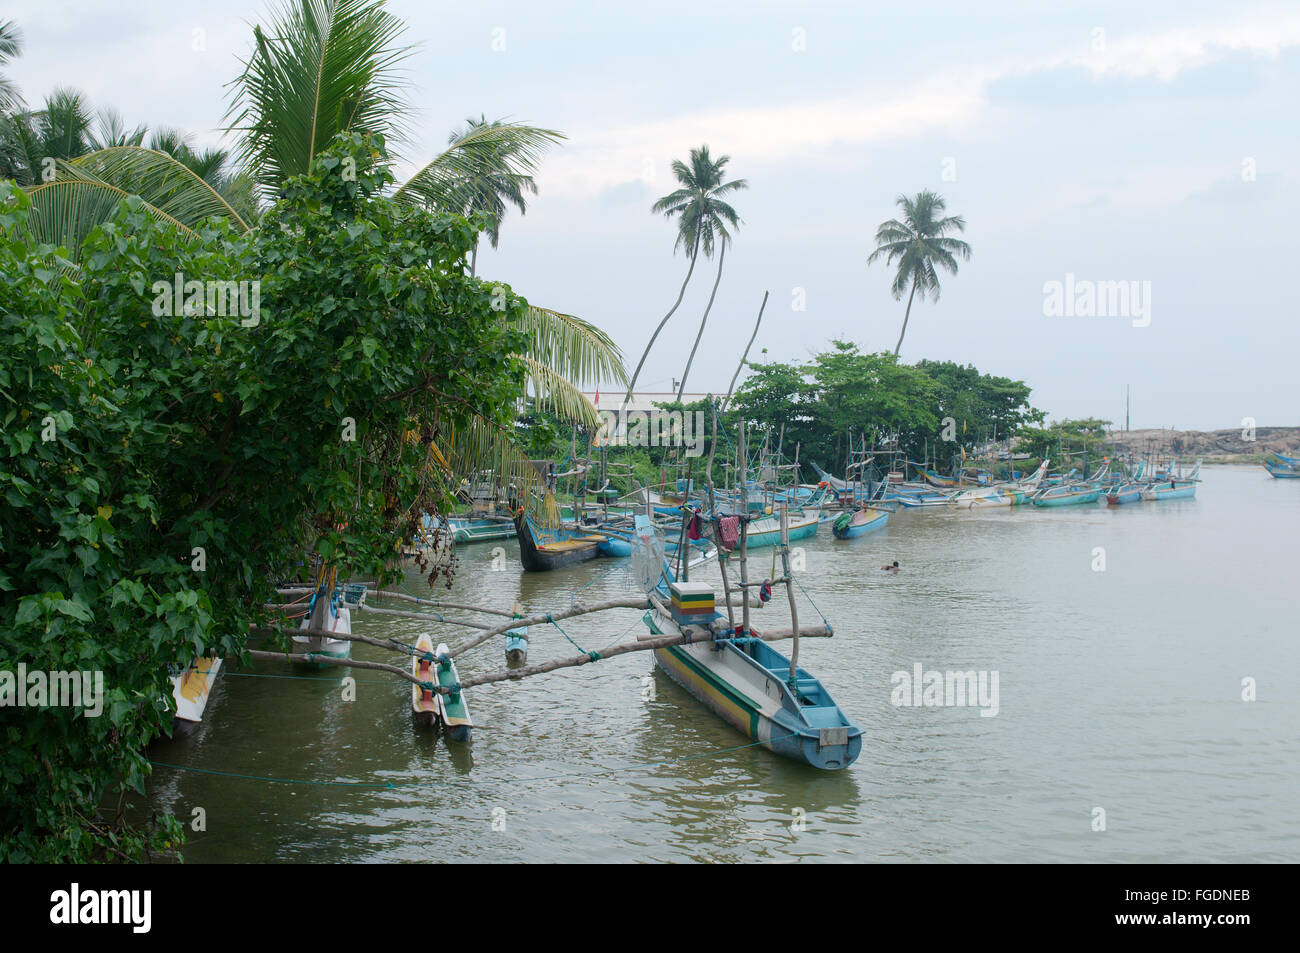 Catamarano tradizionali barche da pesca dello Sri Lanka sono in laguna, Hikkaduwa, Sri Lanka, Sud Asia Foto Stock